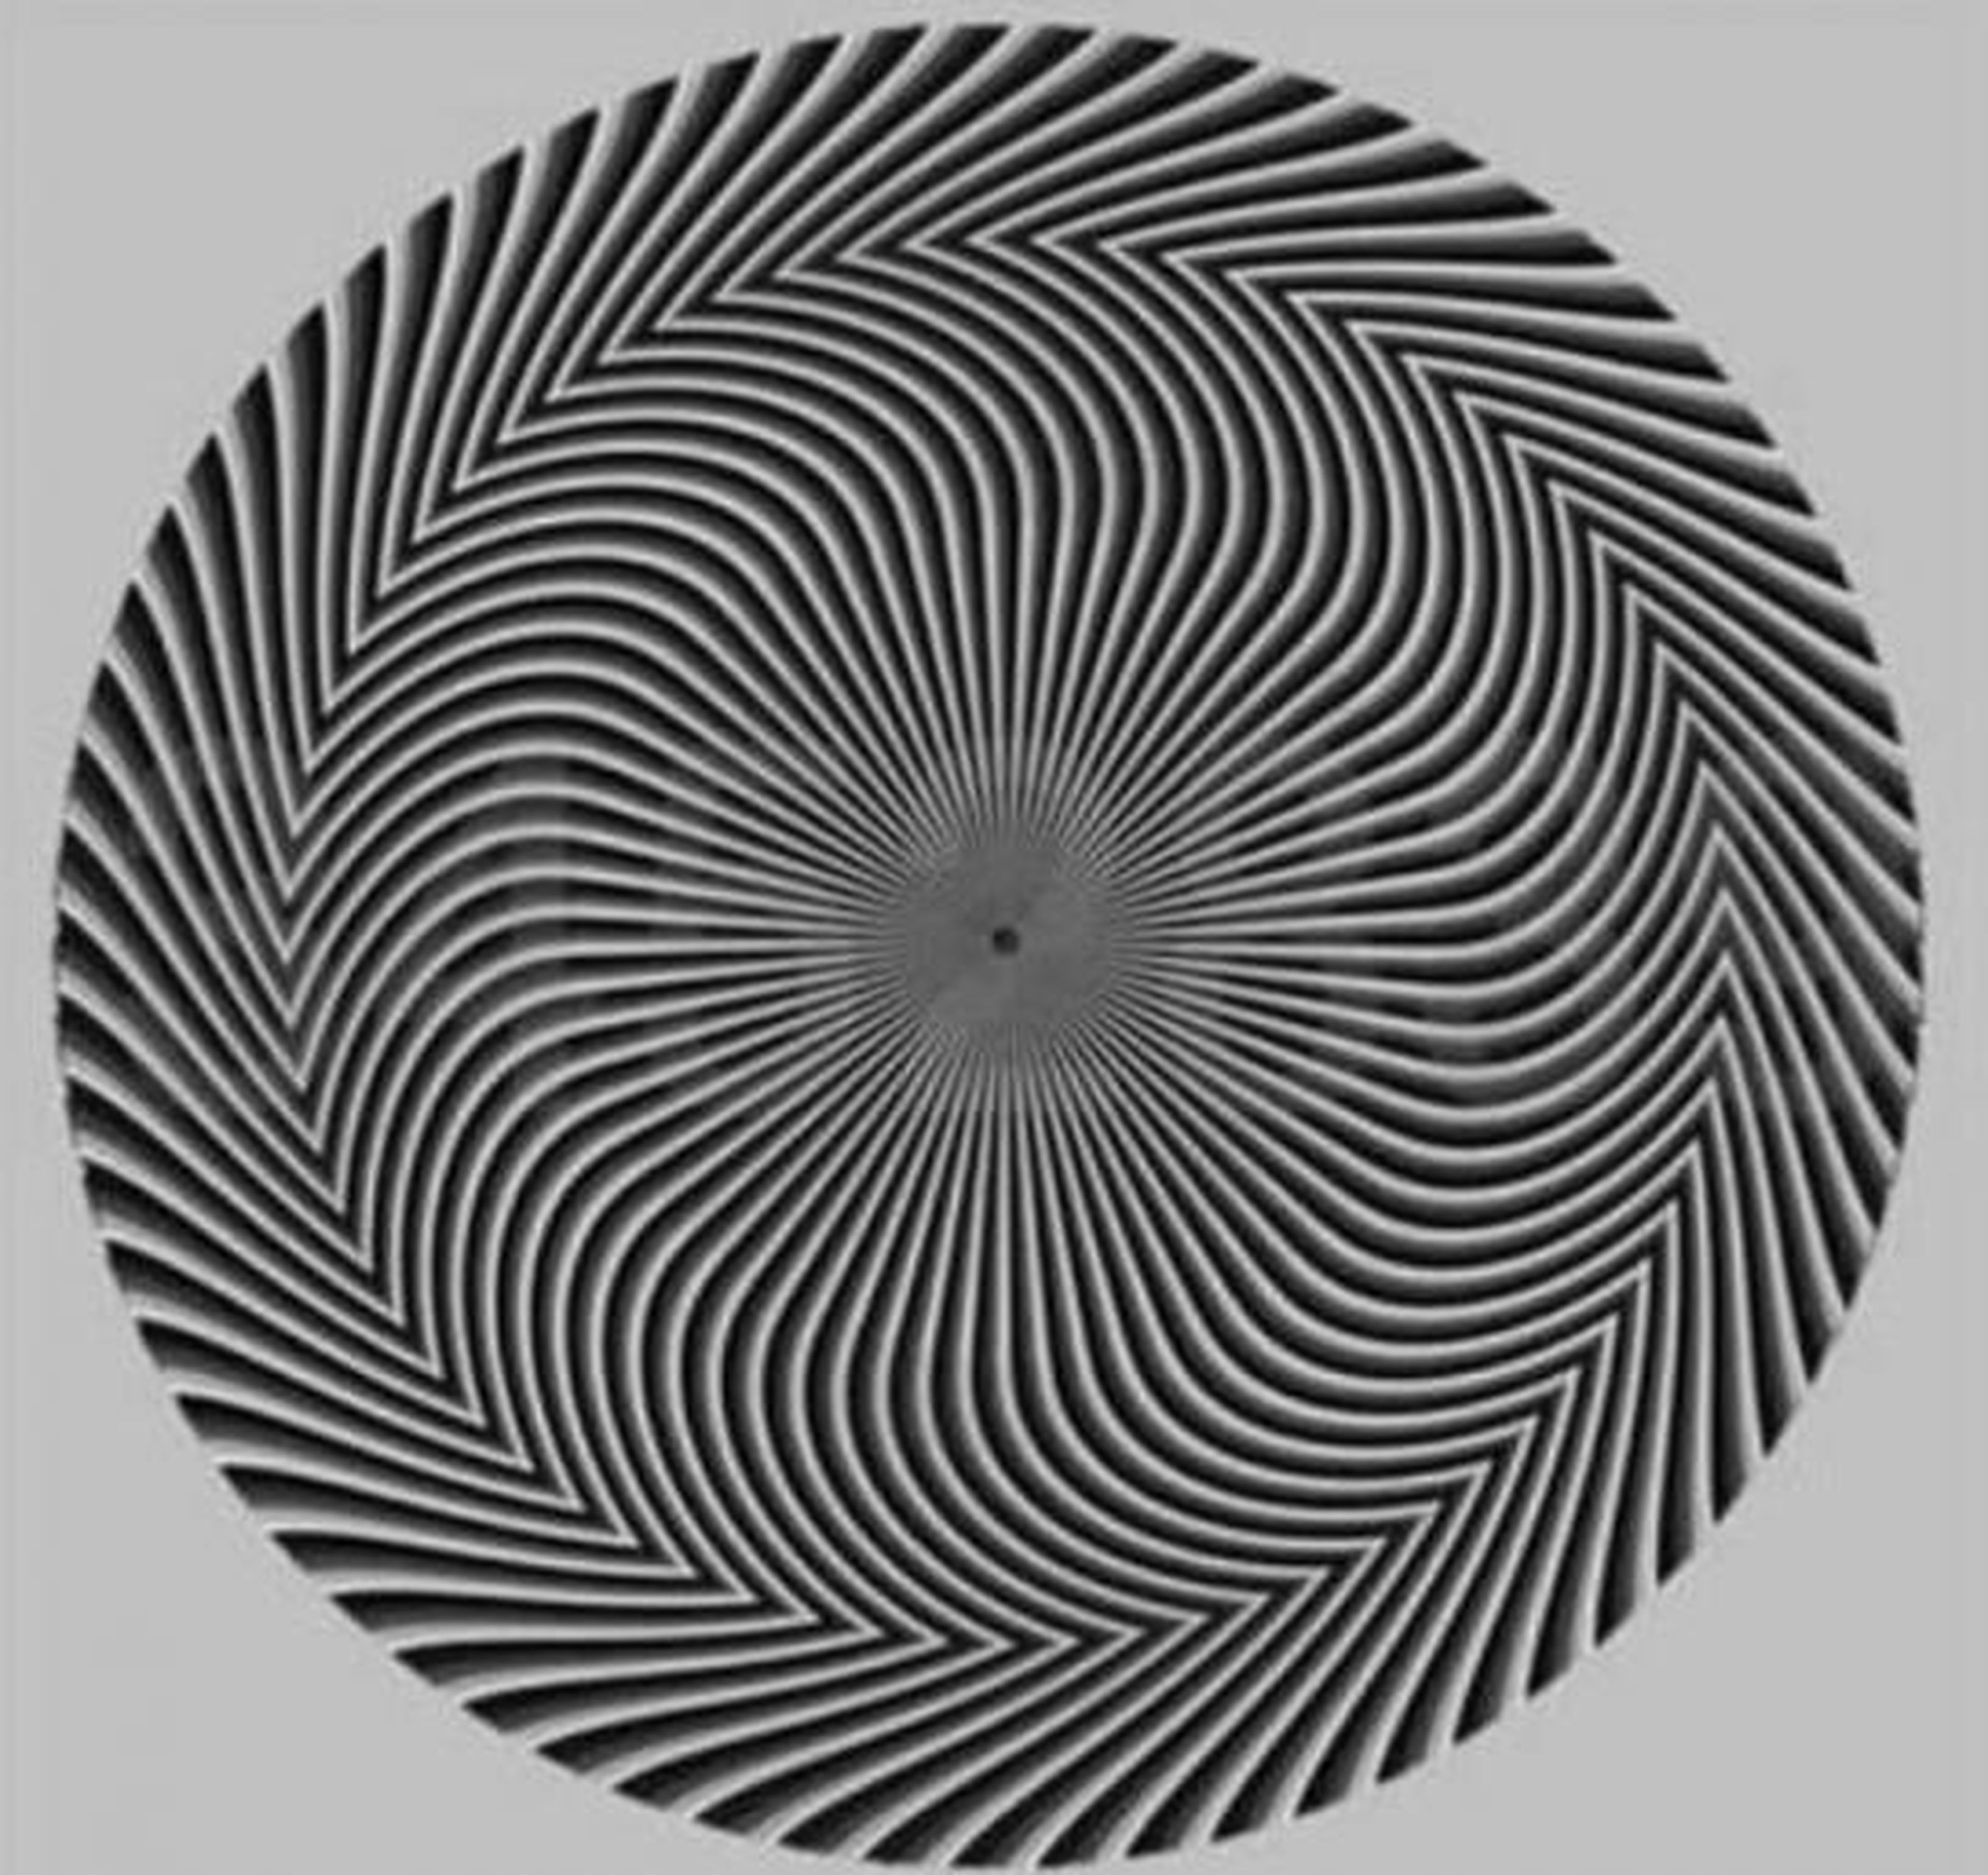 Reto visual número ilusión óptica